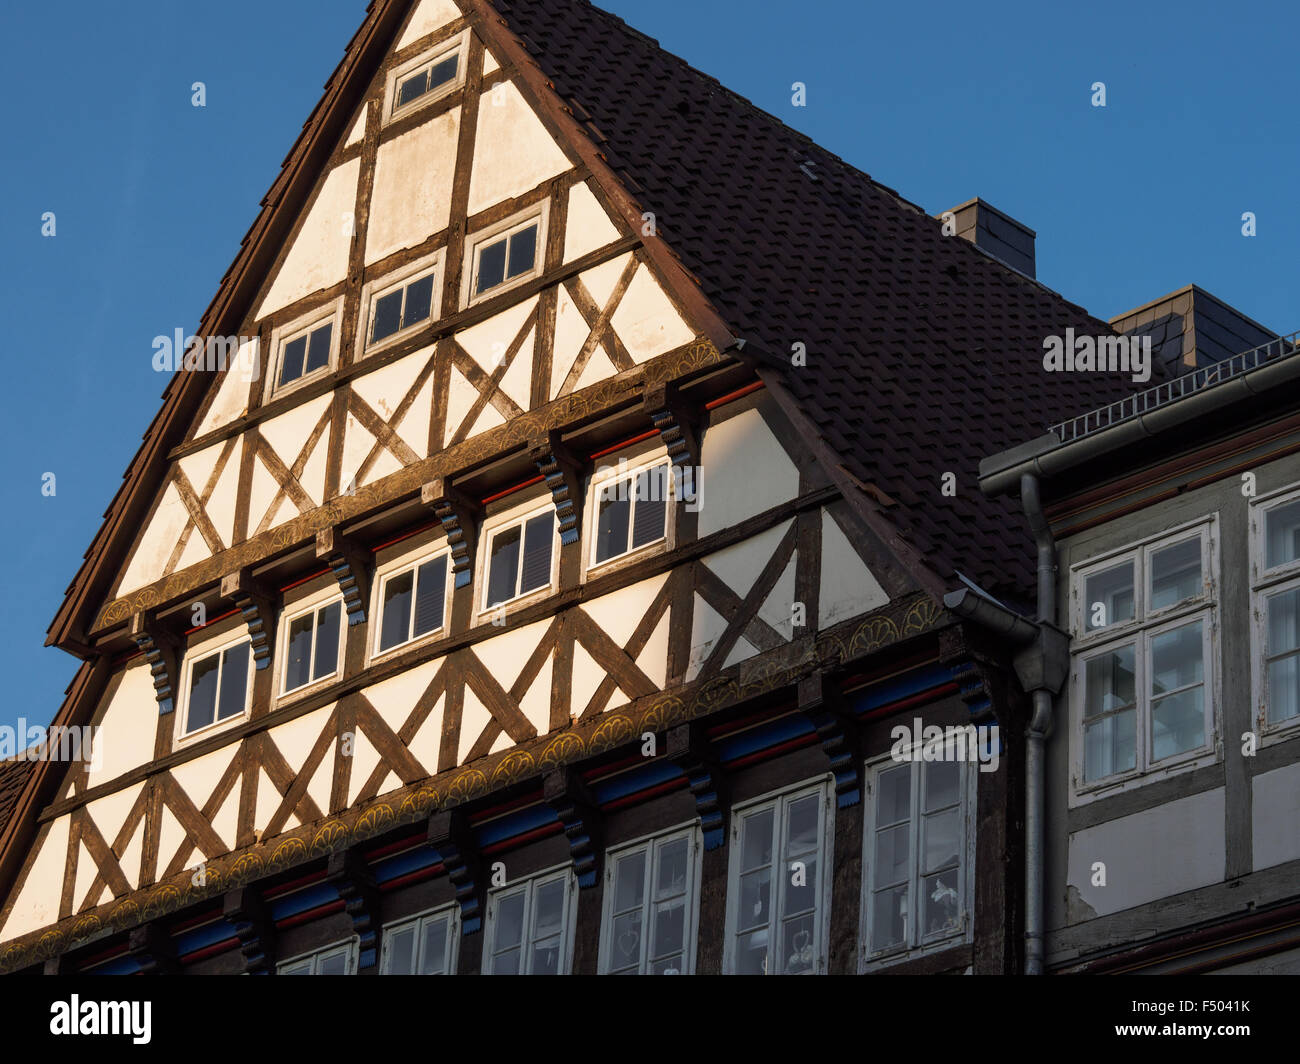 La arquitectura tradicional alemana en Hannover, Alemania Foto de stock